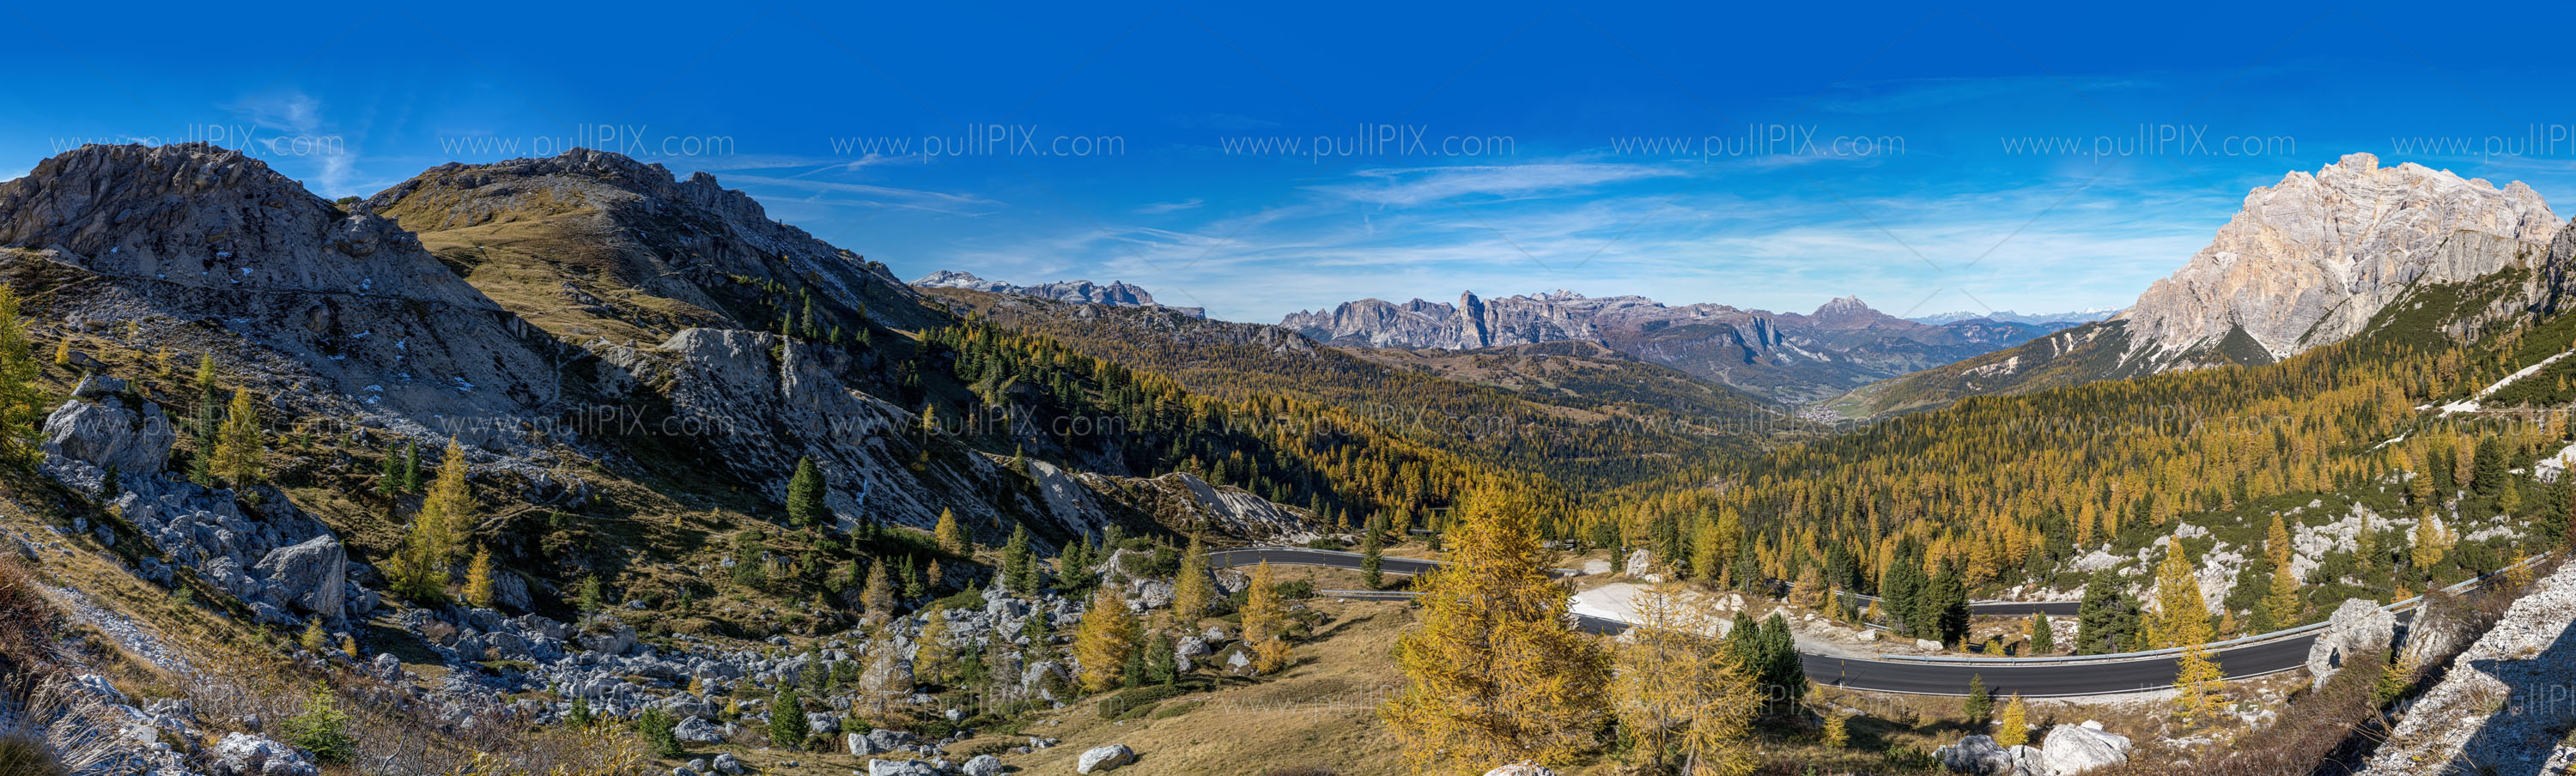 Preview Herbstliche Dolomiten.jpg